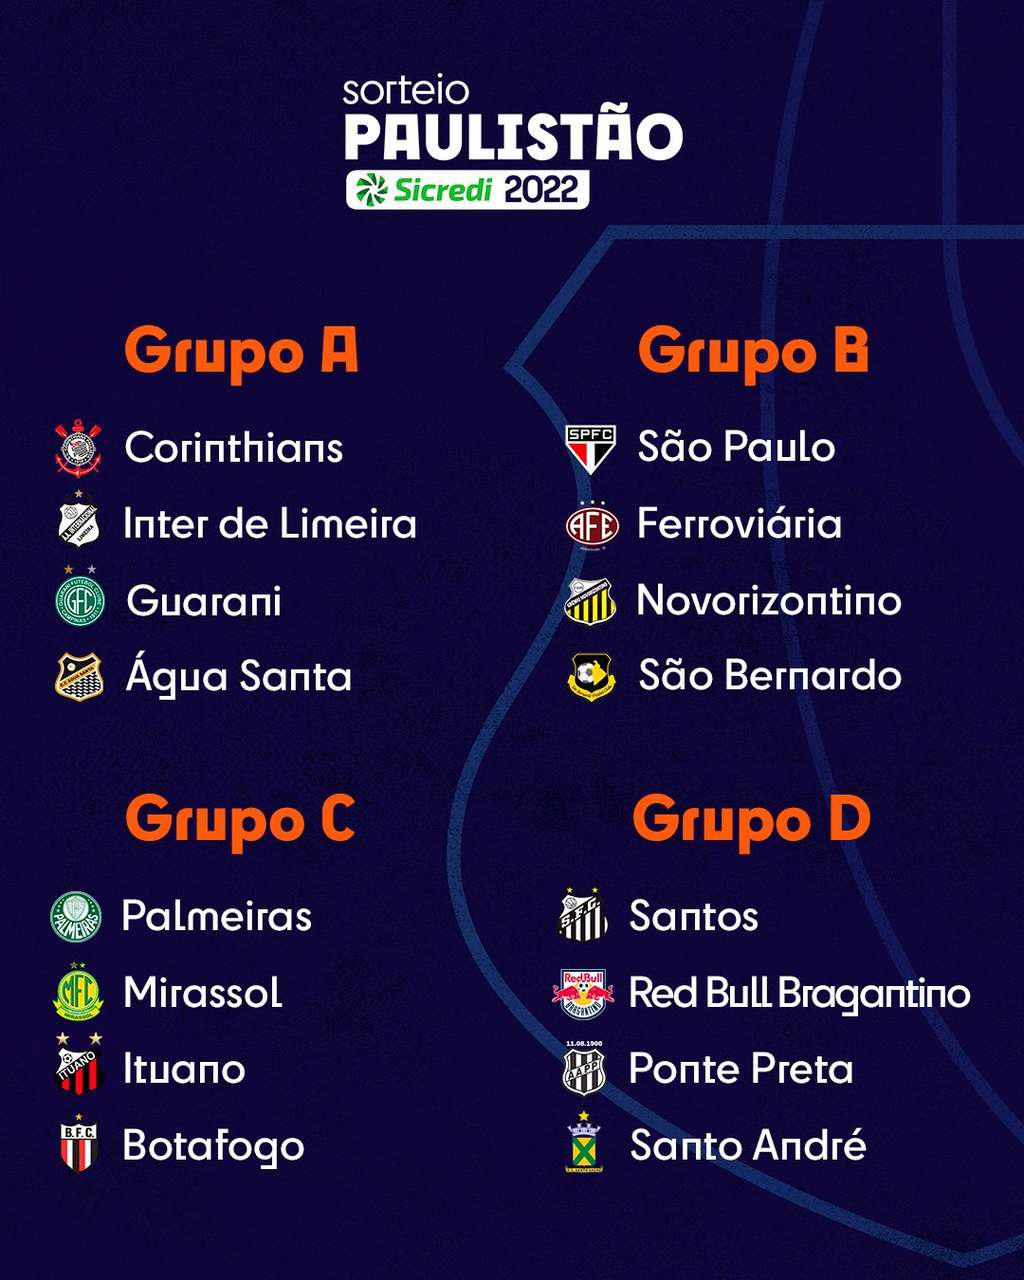 Classificação geral do Campeonato Paulista 2022